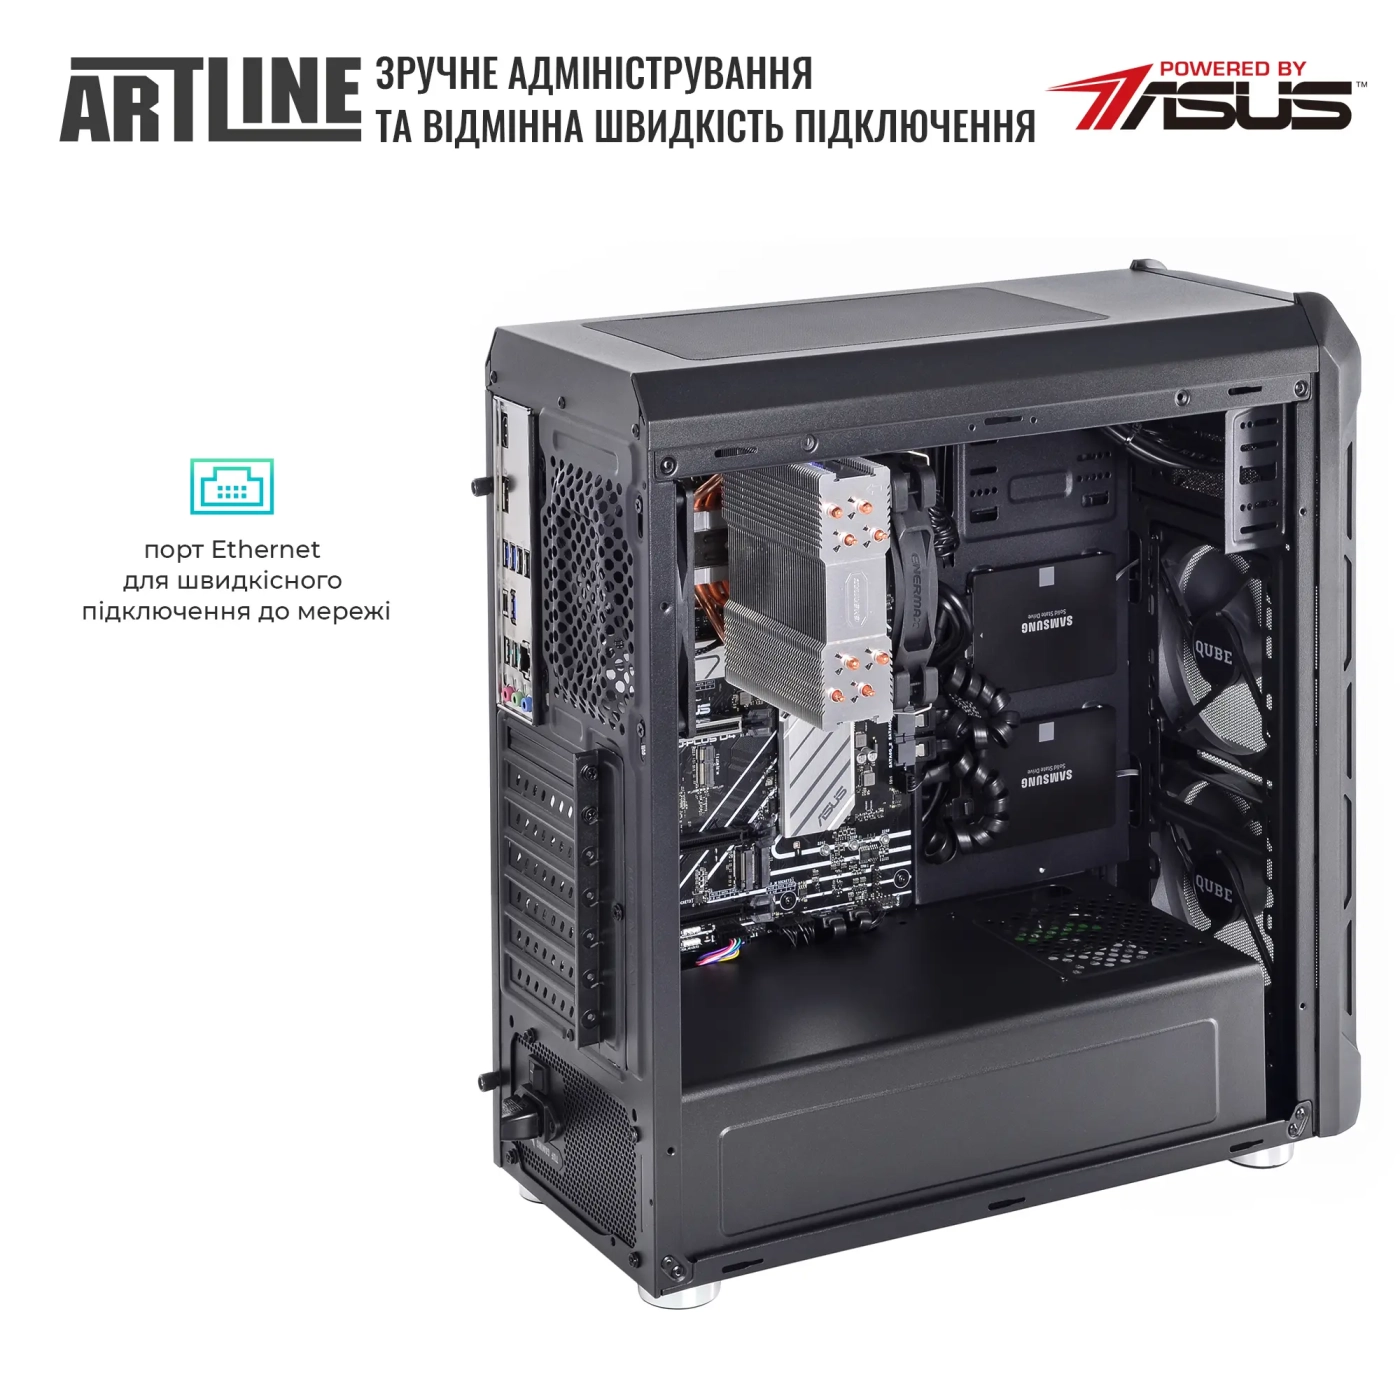 Купить Сервер ARTLINE Business T27 (T27v35) - фото 7